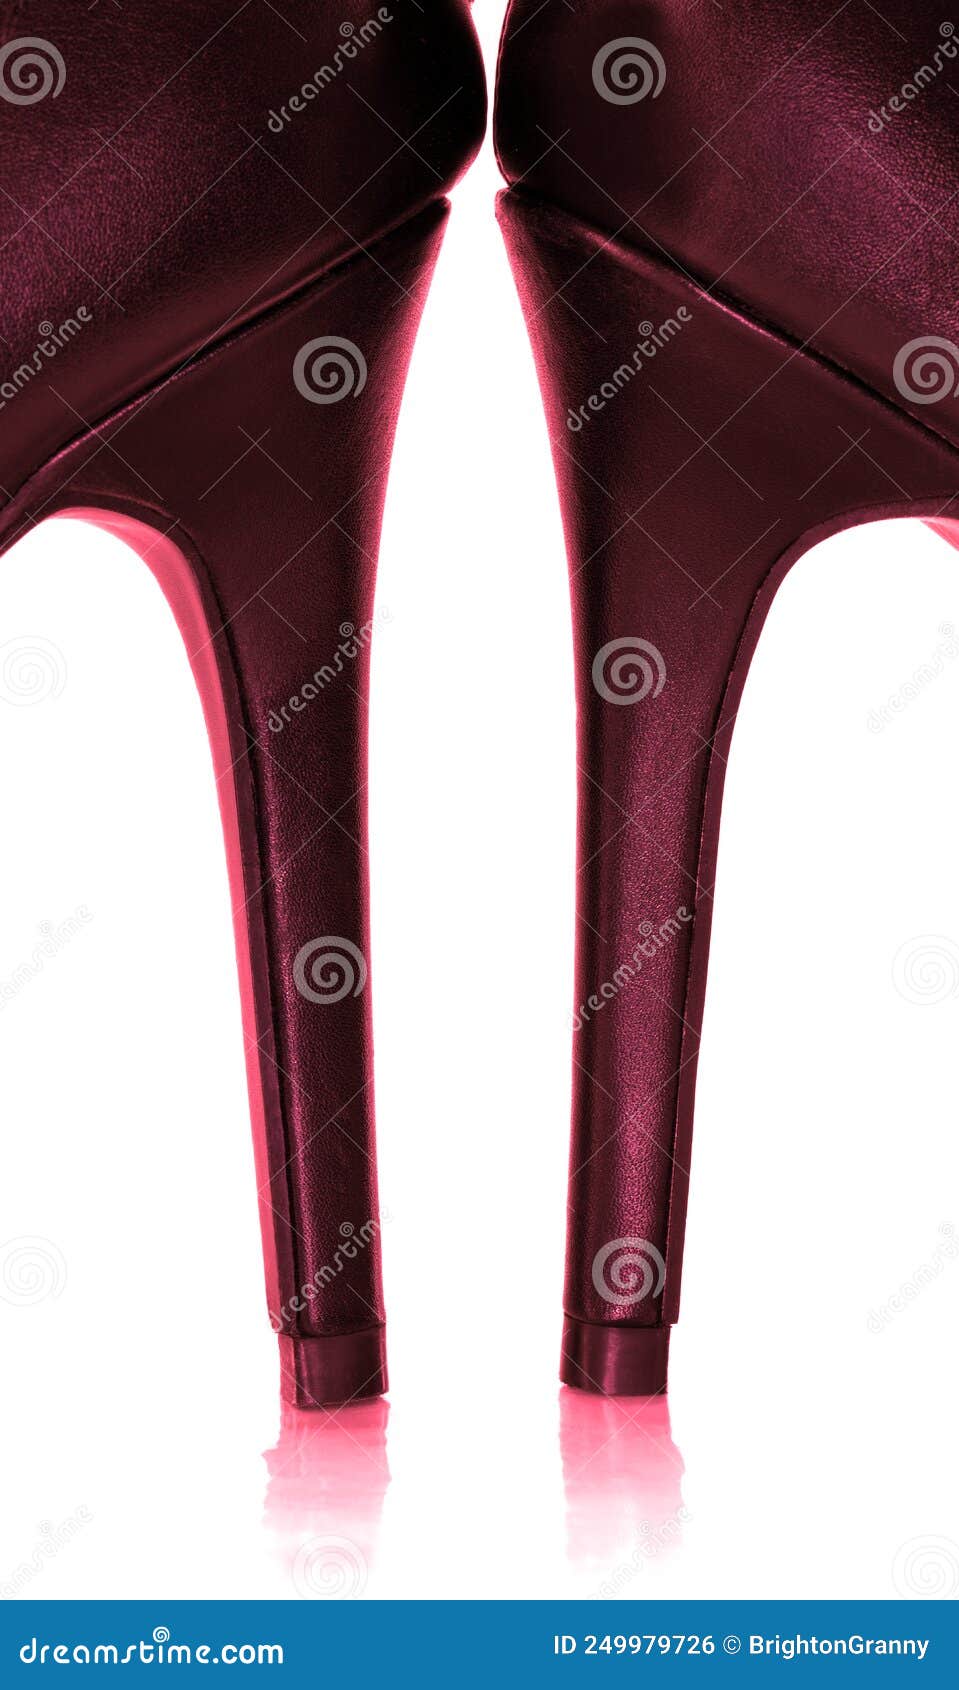 Dress sandals burgundy color - FATIMA women sandals low heel